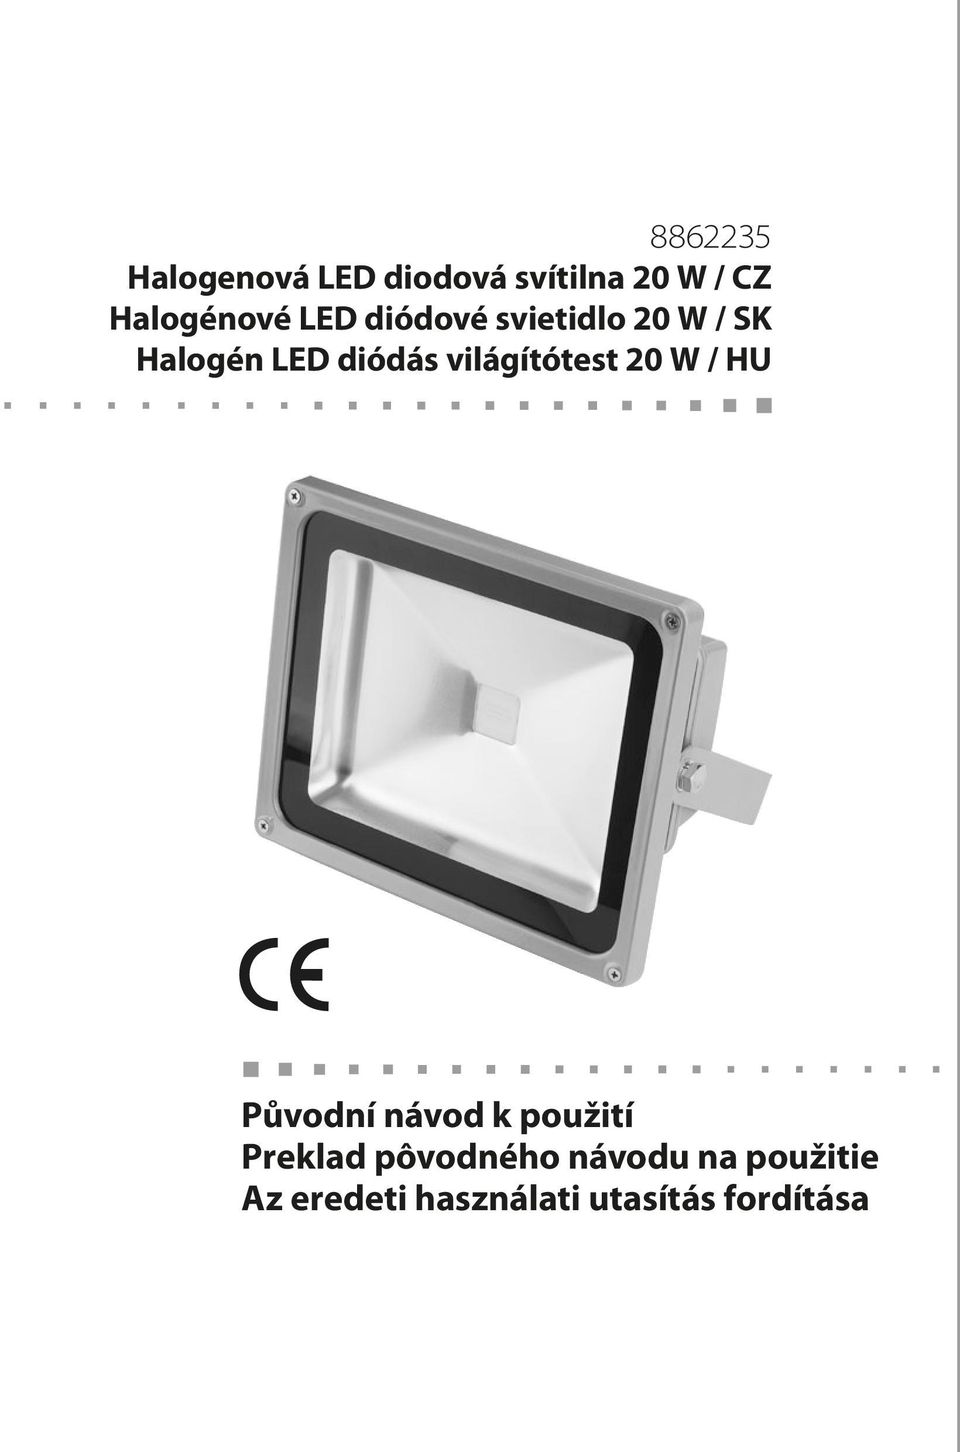 diódás világítótest 20 W / HU Původní návod k použití